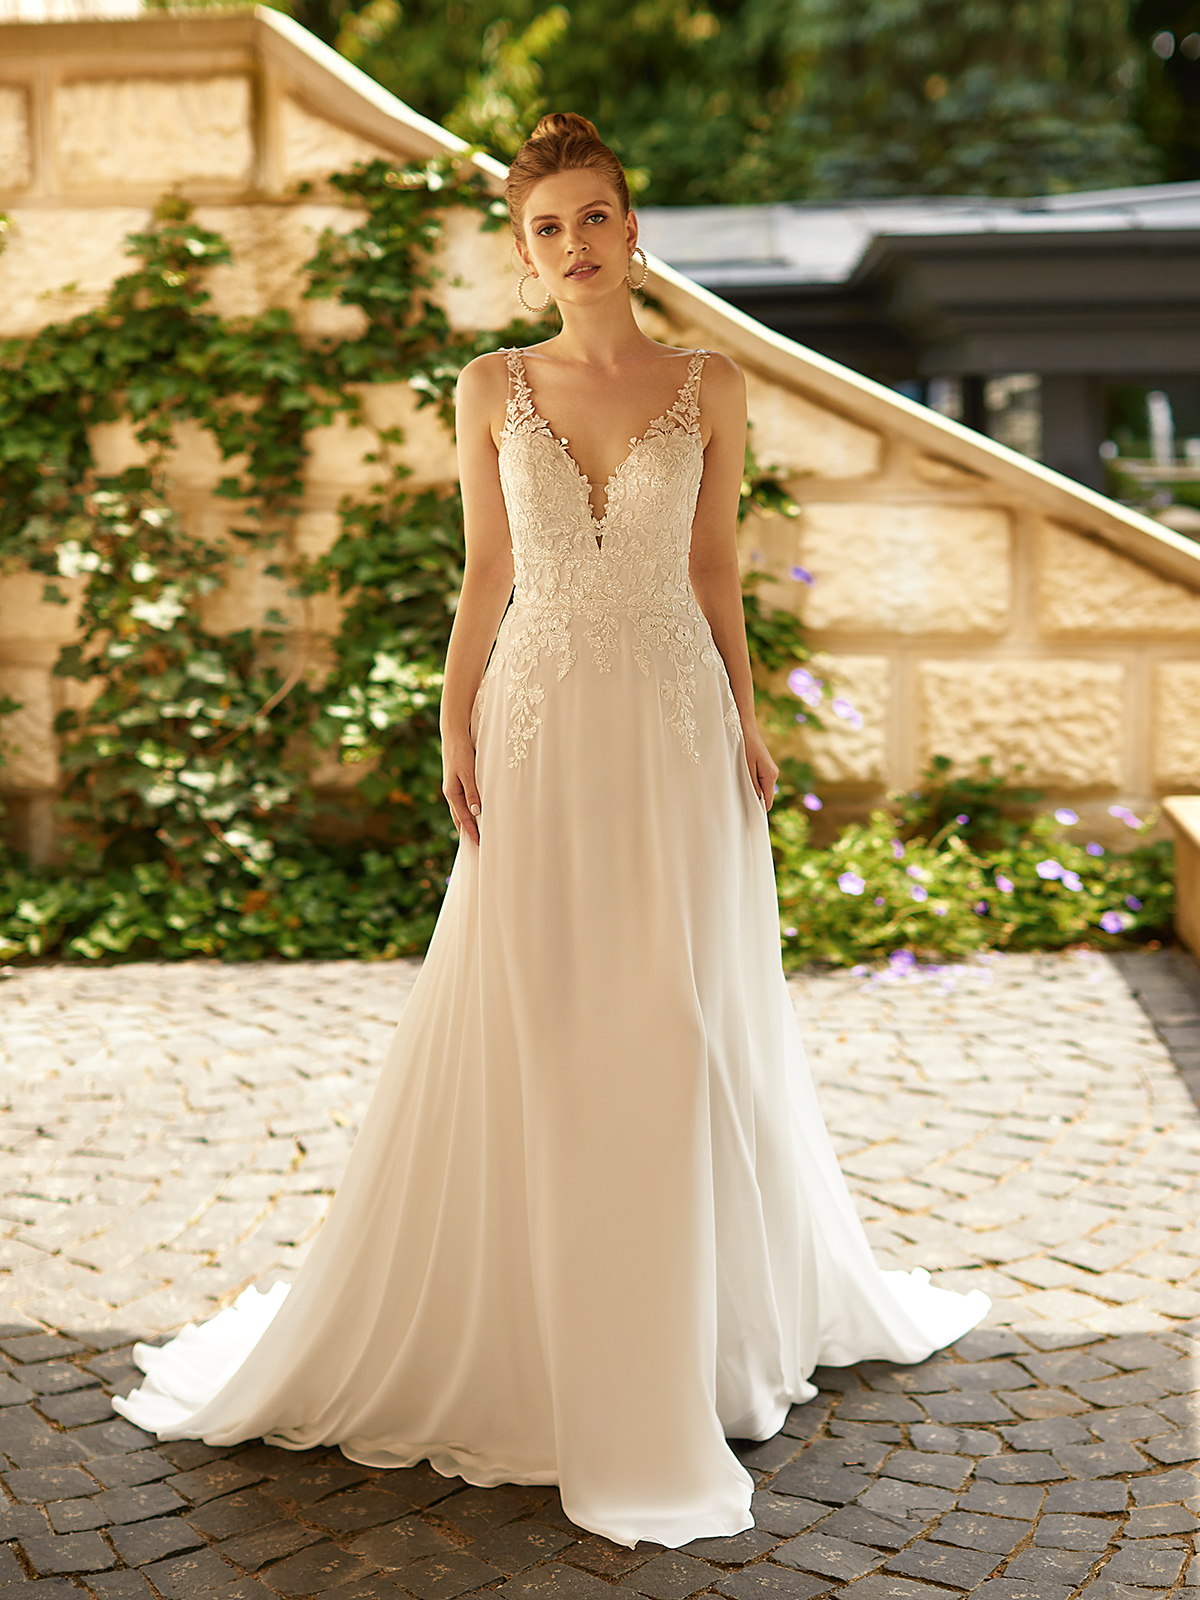 Outdoor Wedding Ideas - Dresses, Venues u0026 More | Moonlight Bridal